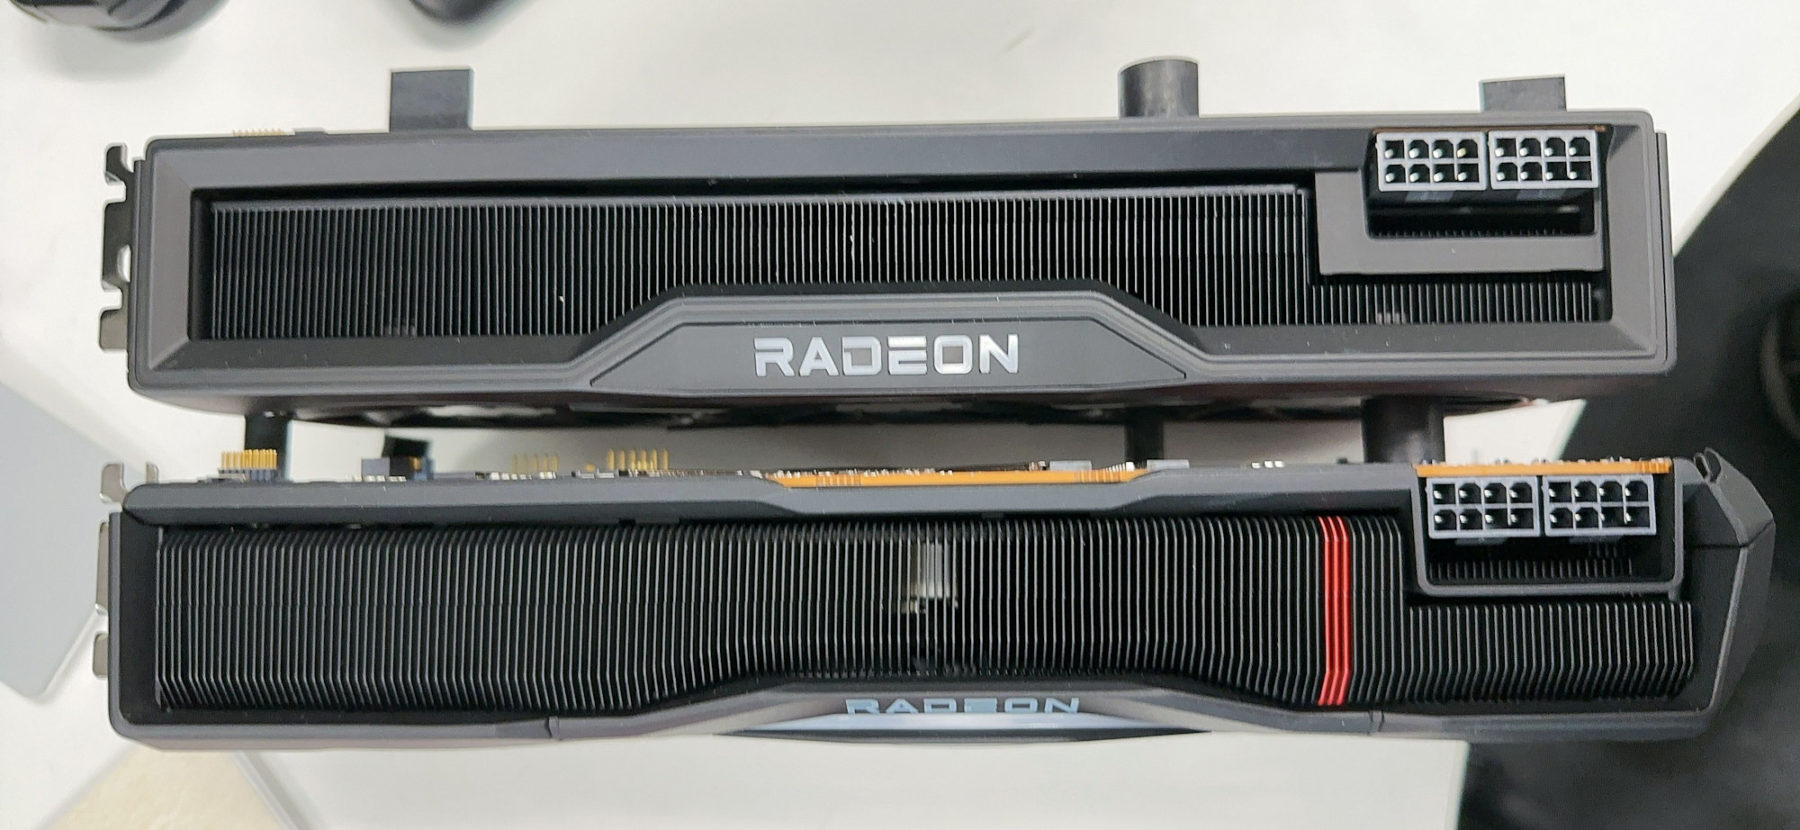 AMD-RADEON-RX-7000-2-1800x830.jpg